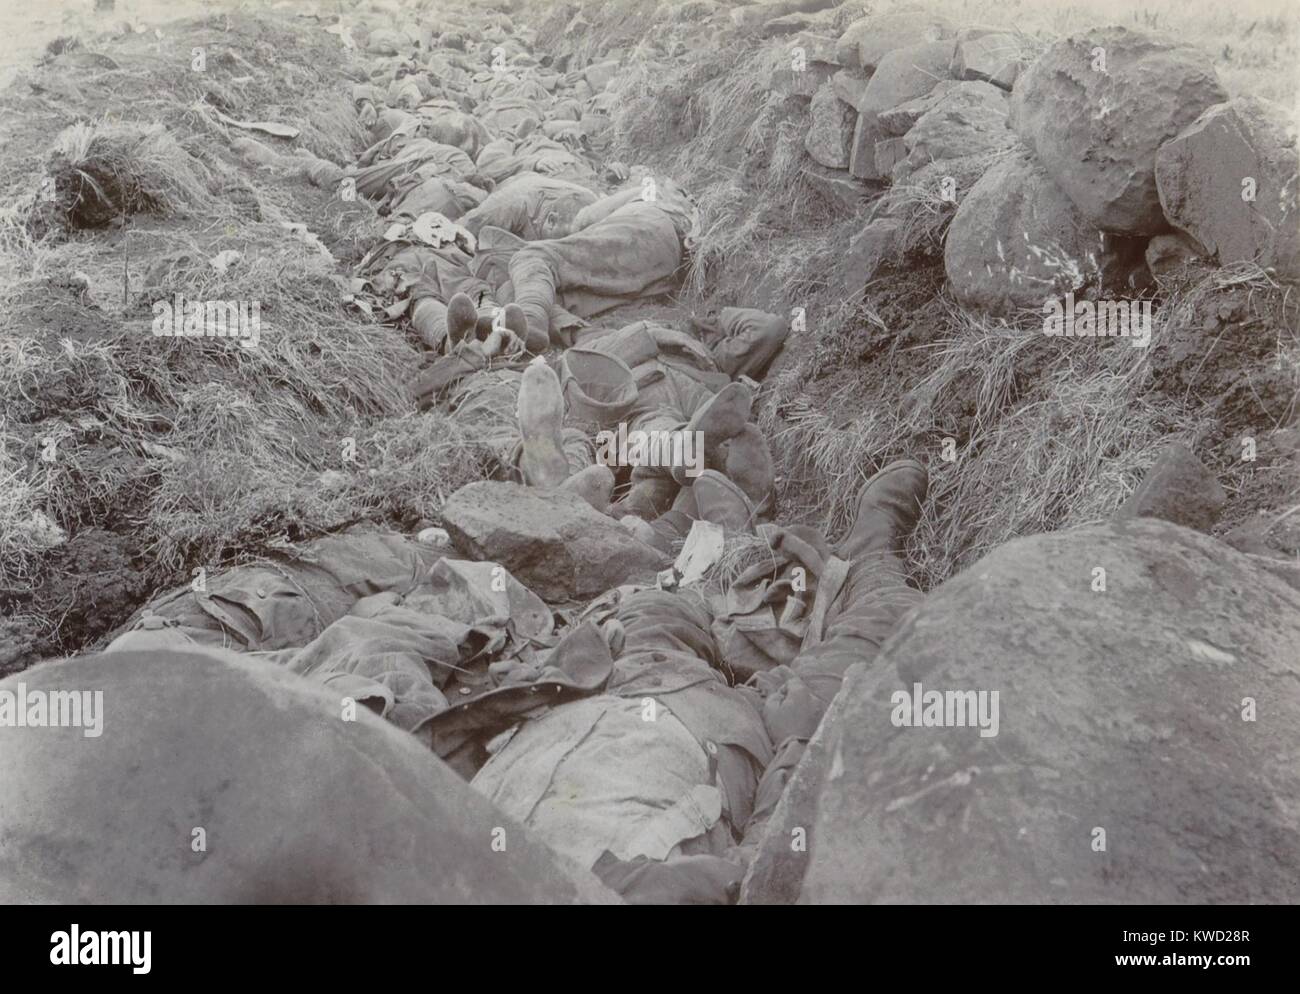 Soldati britannici giacciono morti nel loro shallow trench dopo la battaglia di Spionkop, GEN 23-24, 1900. Facevano parte della forza di tentare di rompere il Afrikaner assedio di Ladysmith, durante la guerra di Boer, 1899-1901 (BSLOC 2017 20 51) Foto Stock